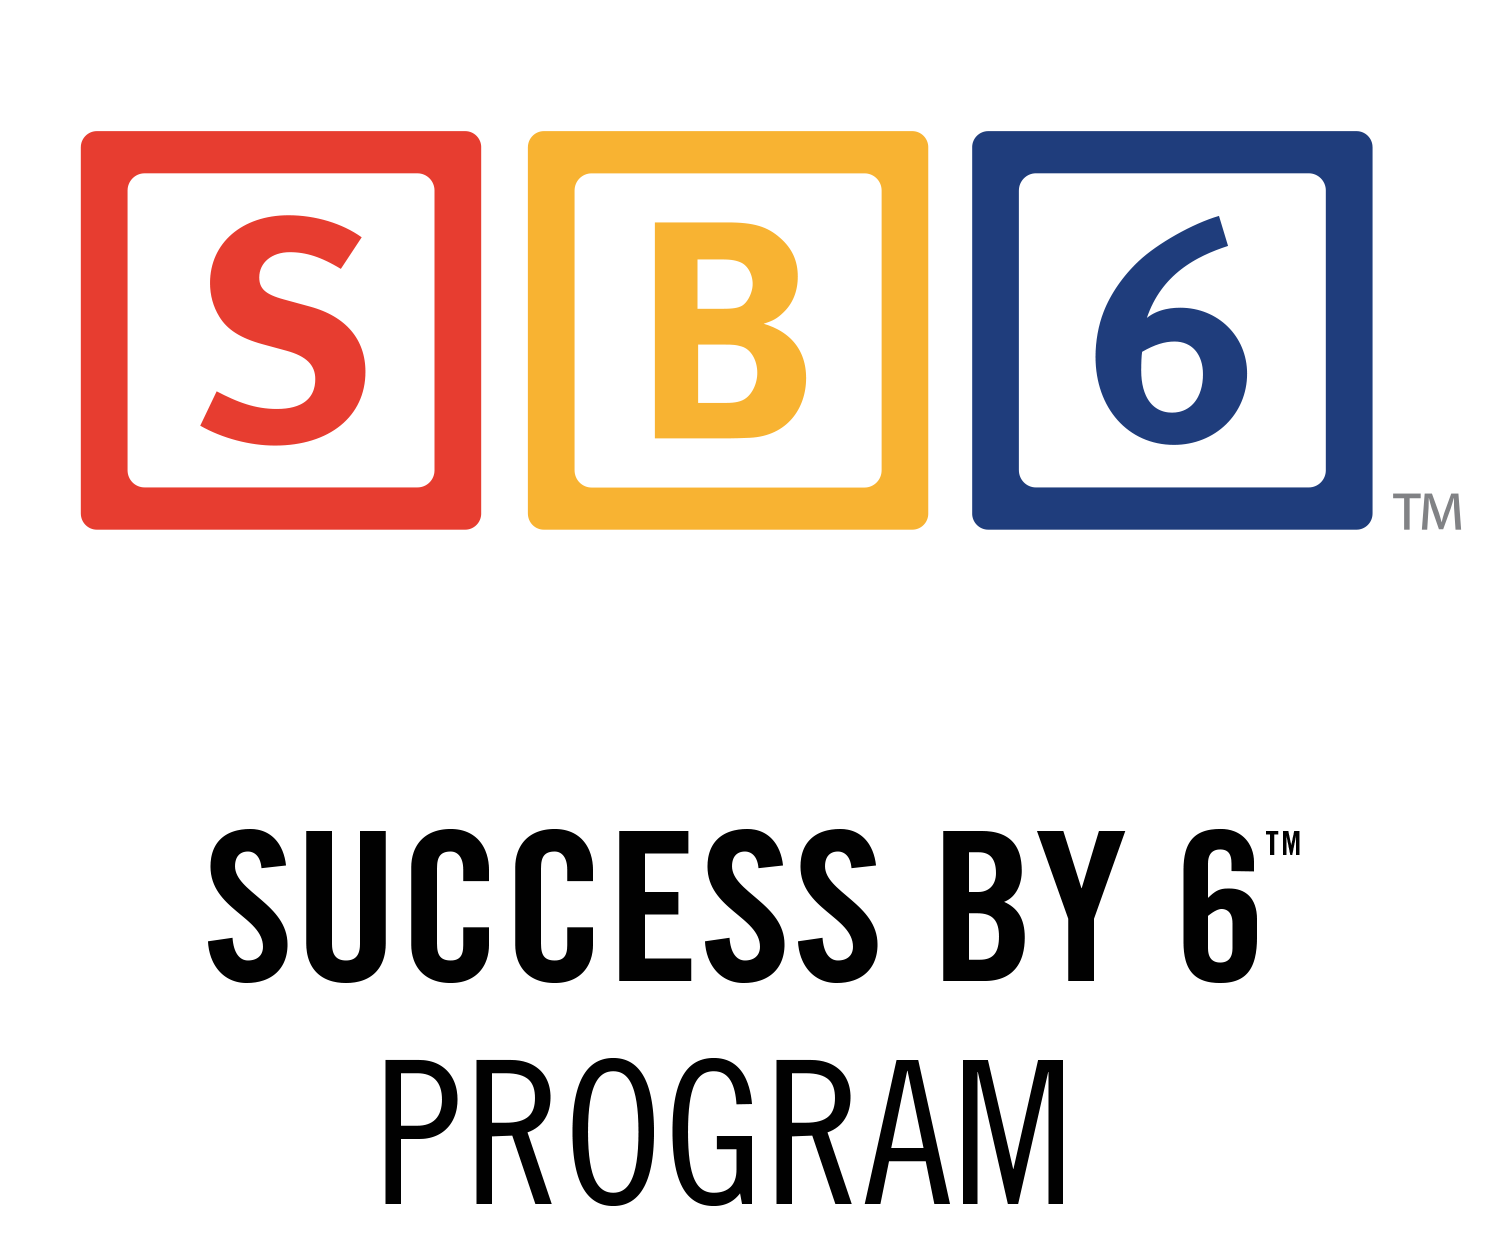 sb6-logo